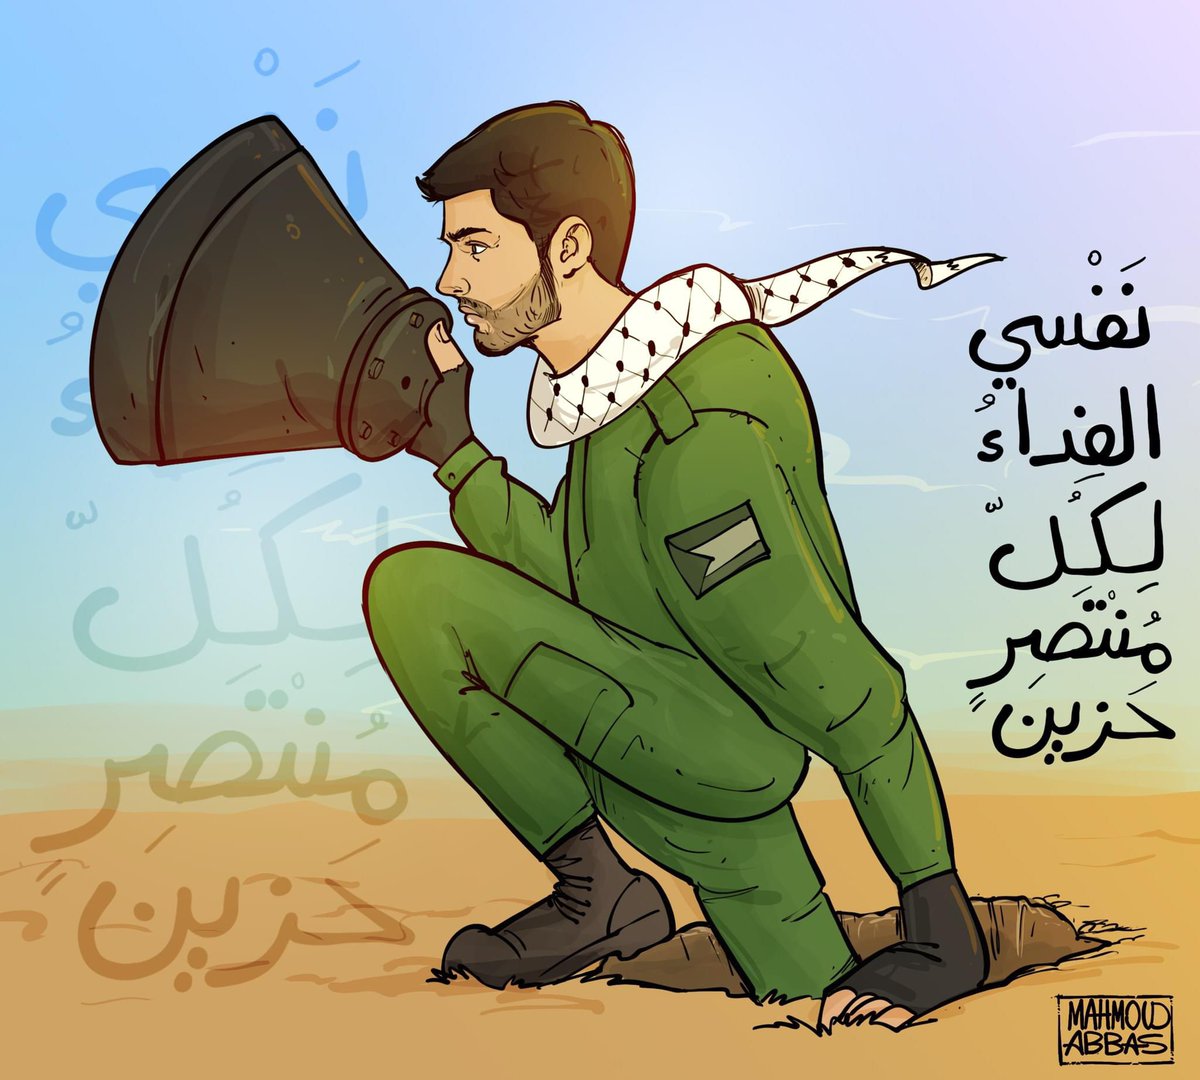 نفسي الفداء لكل منتصر حزين

#كاريكاتير #غزة